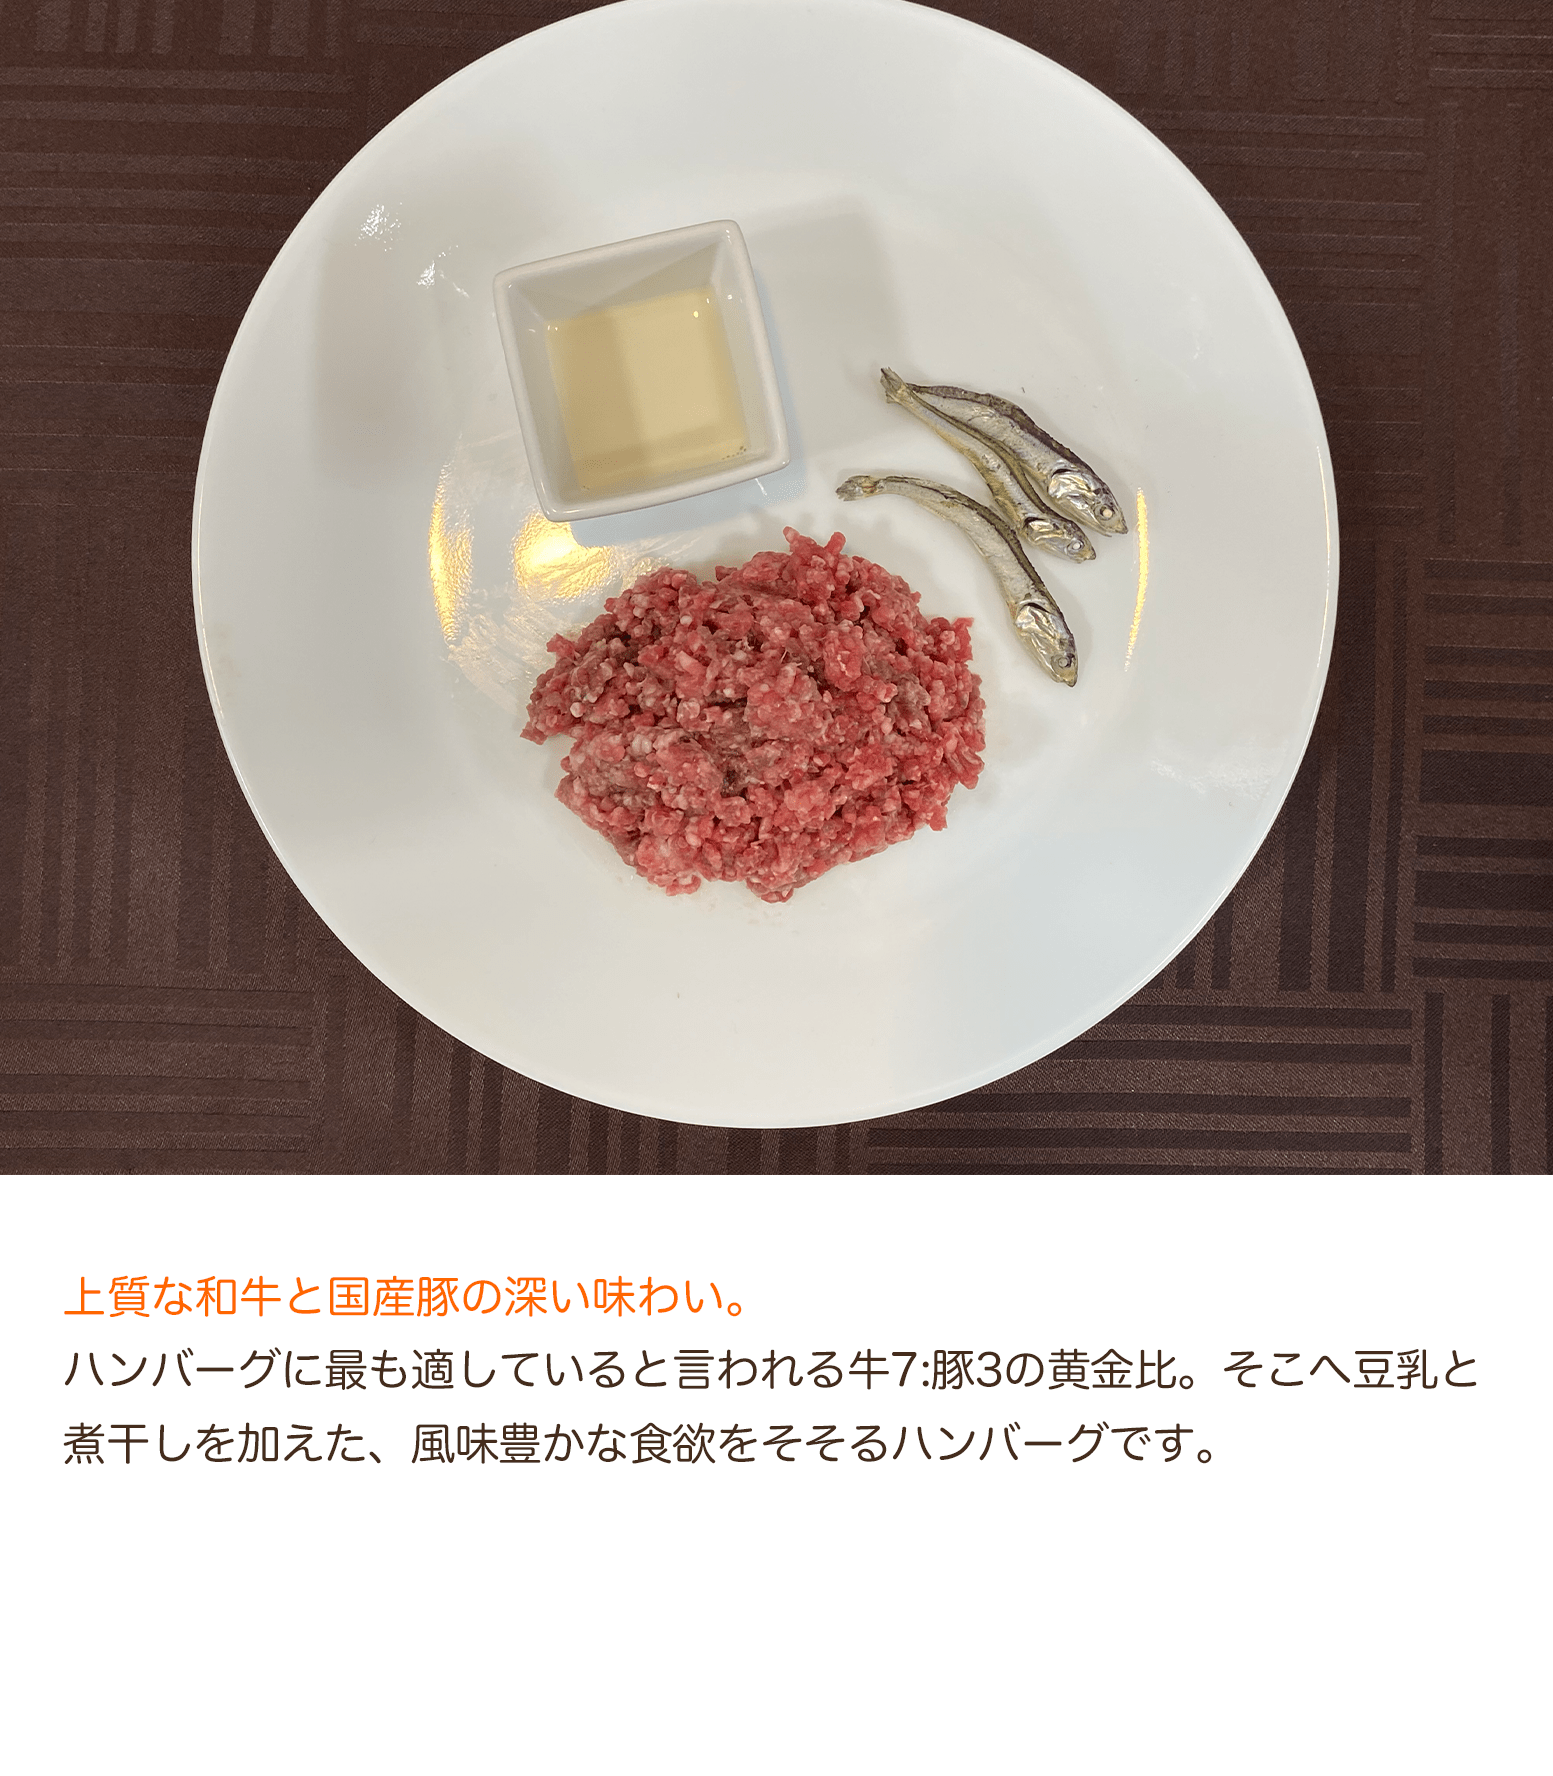 【定期購入】豆乳仕立ての特製チーズハンバーグ(5個セット)